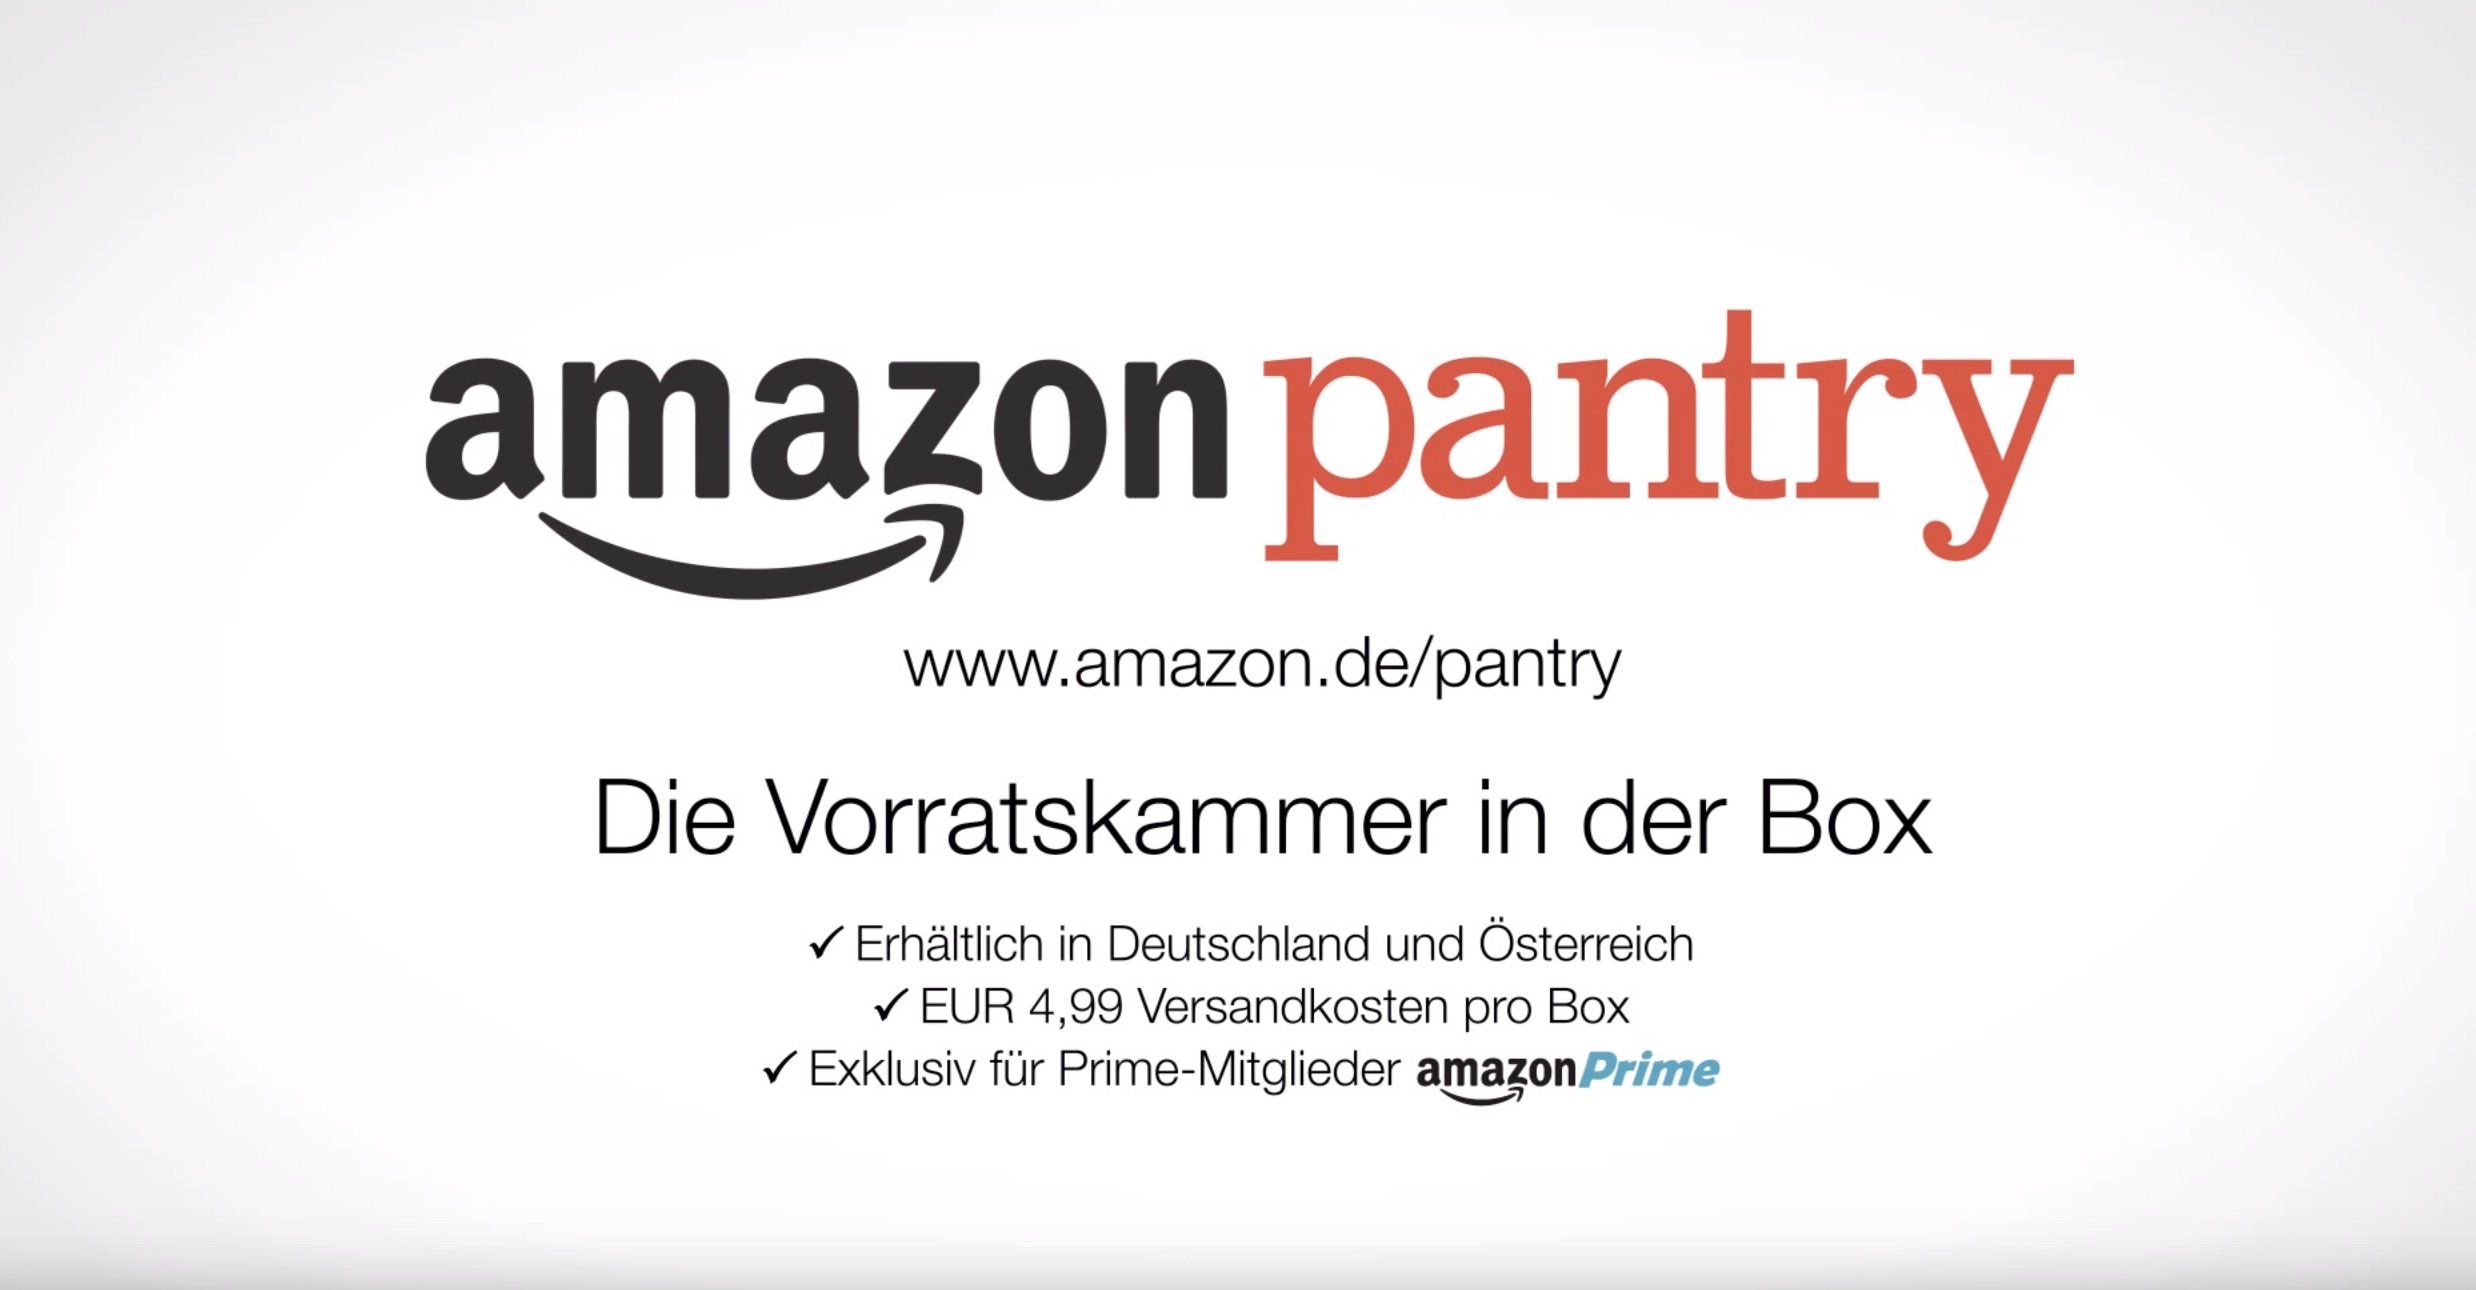 Amazon Pantry: Essen kaufen bei Amazon - die virtuelle Vorratskammer! 1